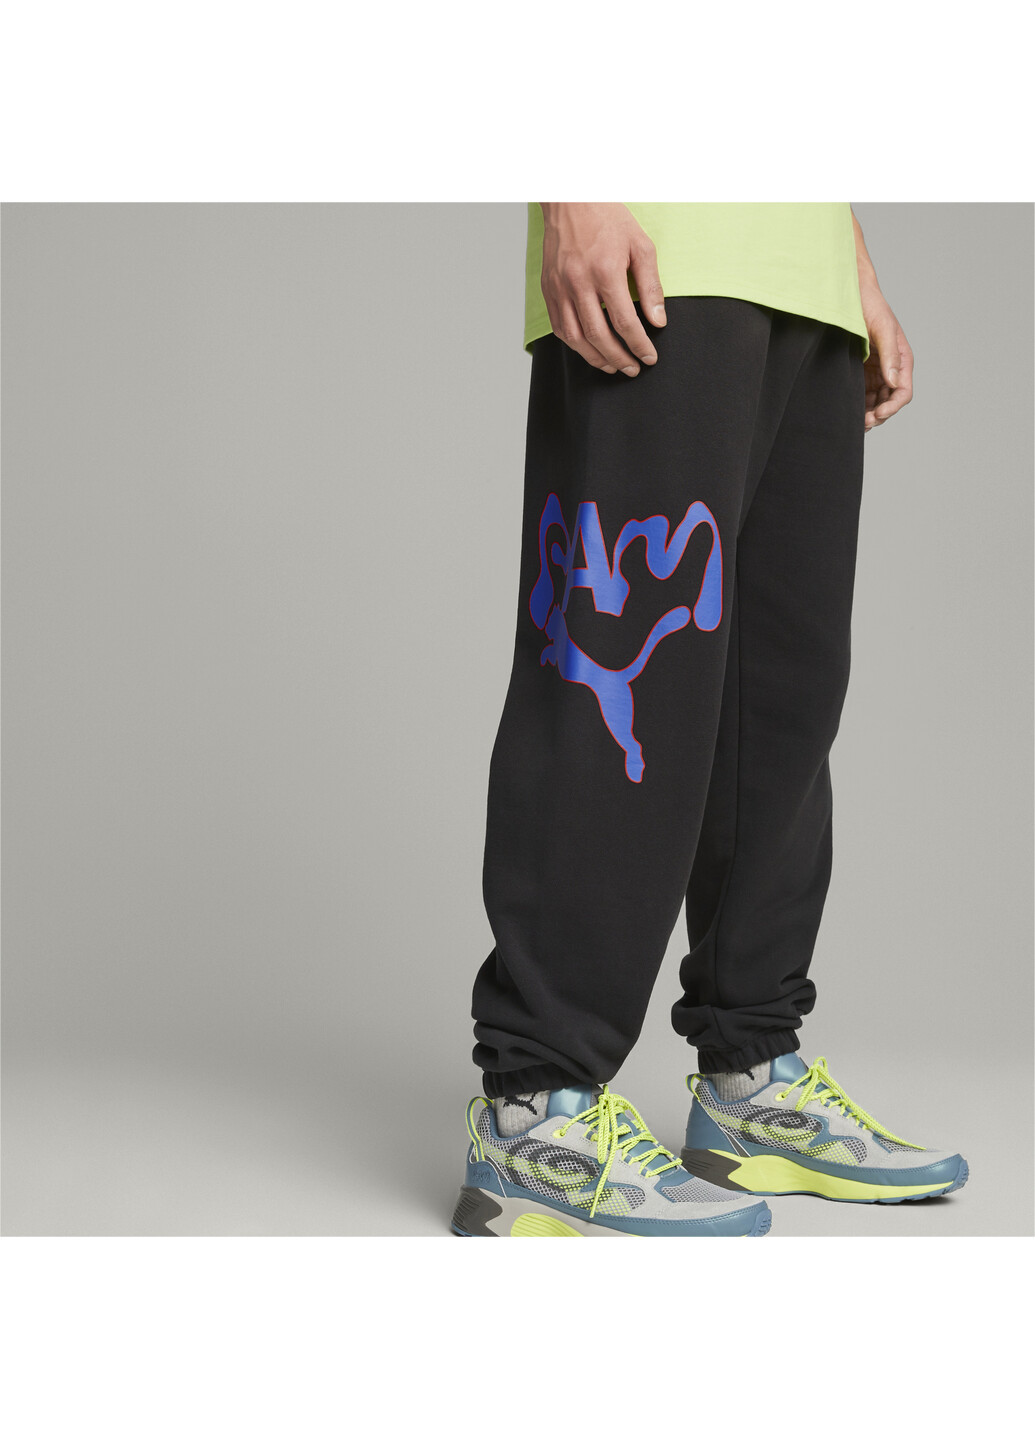 Спортивные штаны x PERKS AND MINI Graphic Sweatpants Puma (276963013)